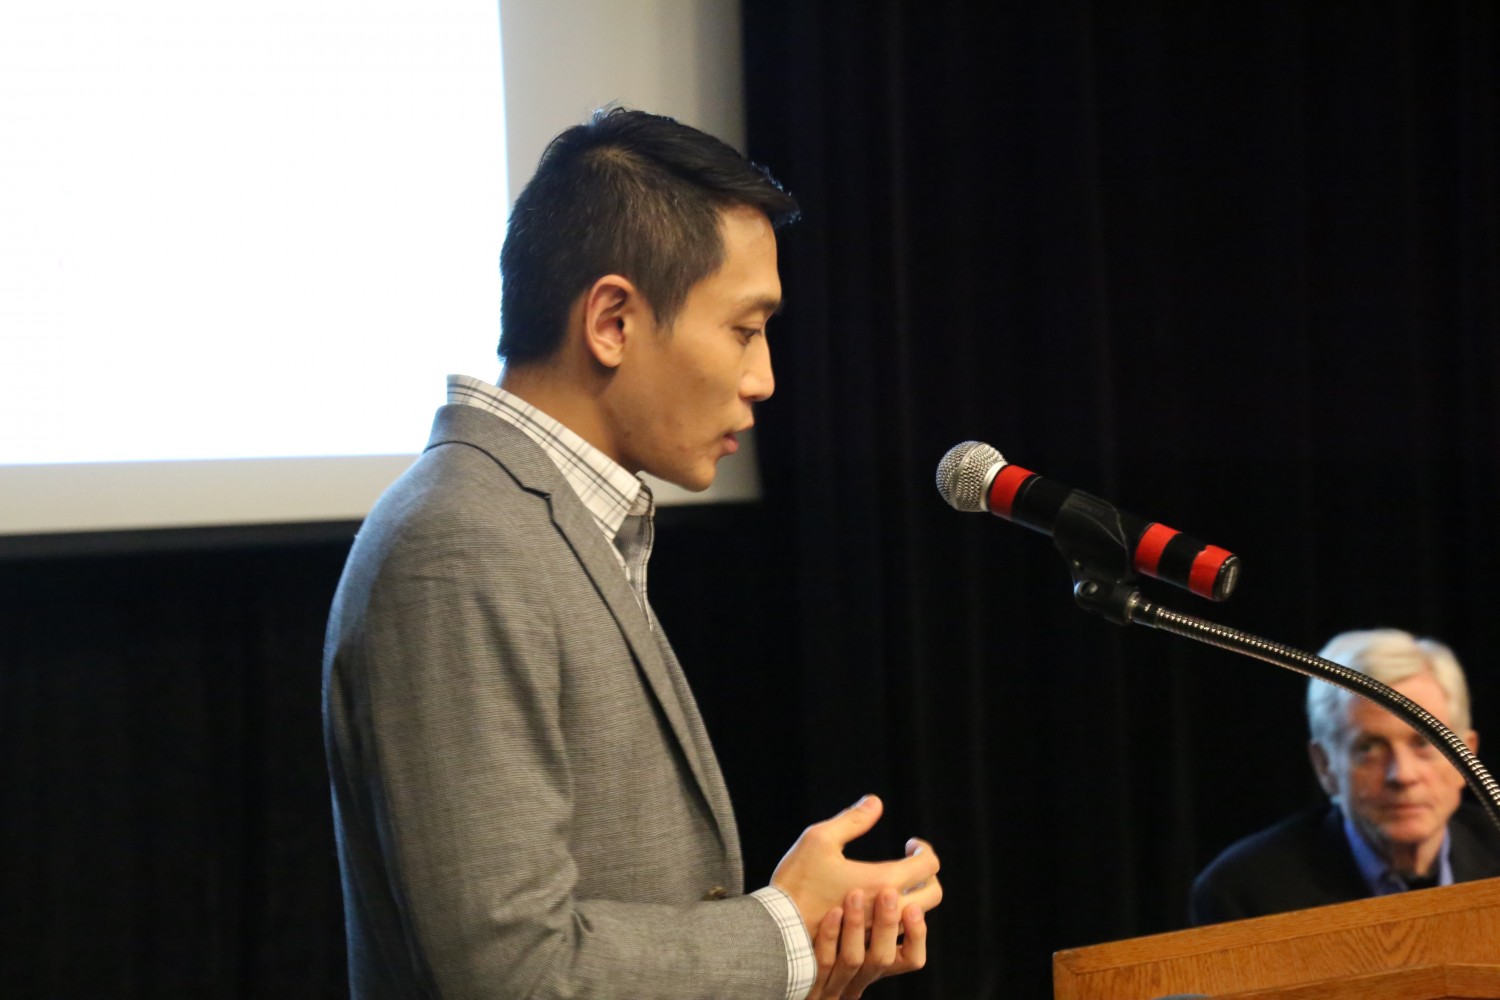 Phó giáo sư Y.Y. Chen đang nói với khán giả như là người điều tiết cuộc thảo luận sau khi chiếu phim "Thu hoạch Nhân thể" tại Đại học Ottawa vào ngày 6 tháng 4 năm 2017. (Jonathan Ren / Epoch Times)